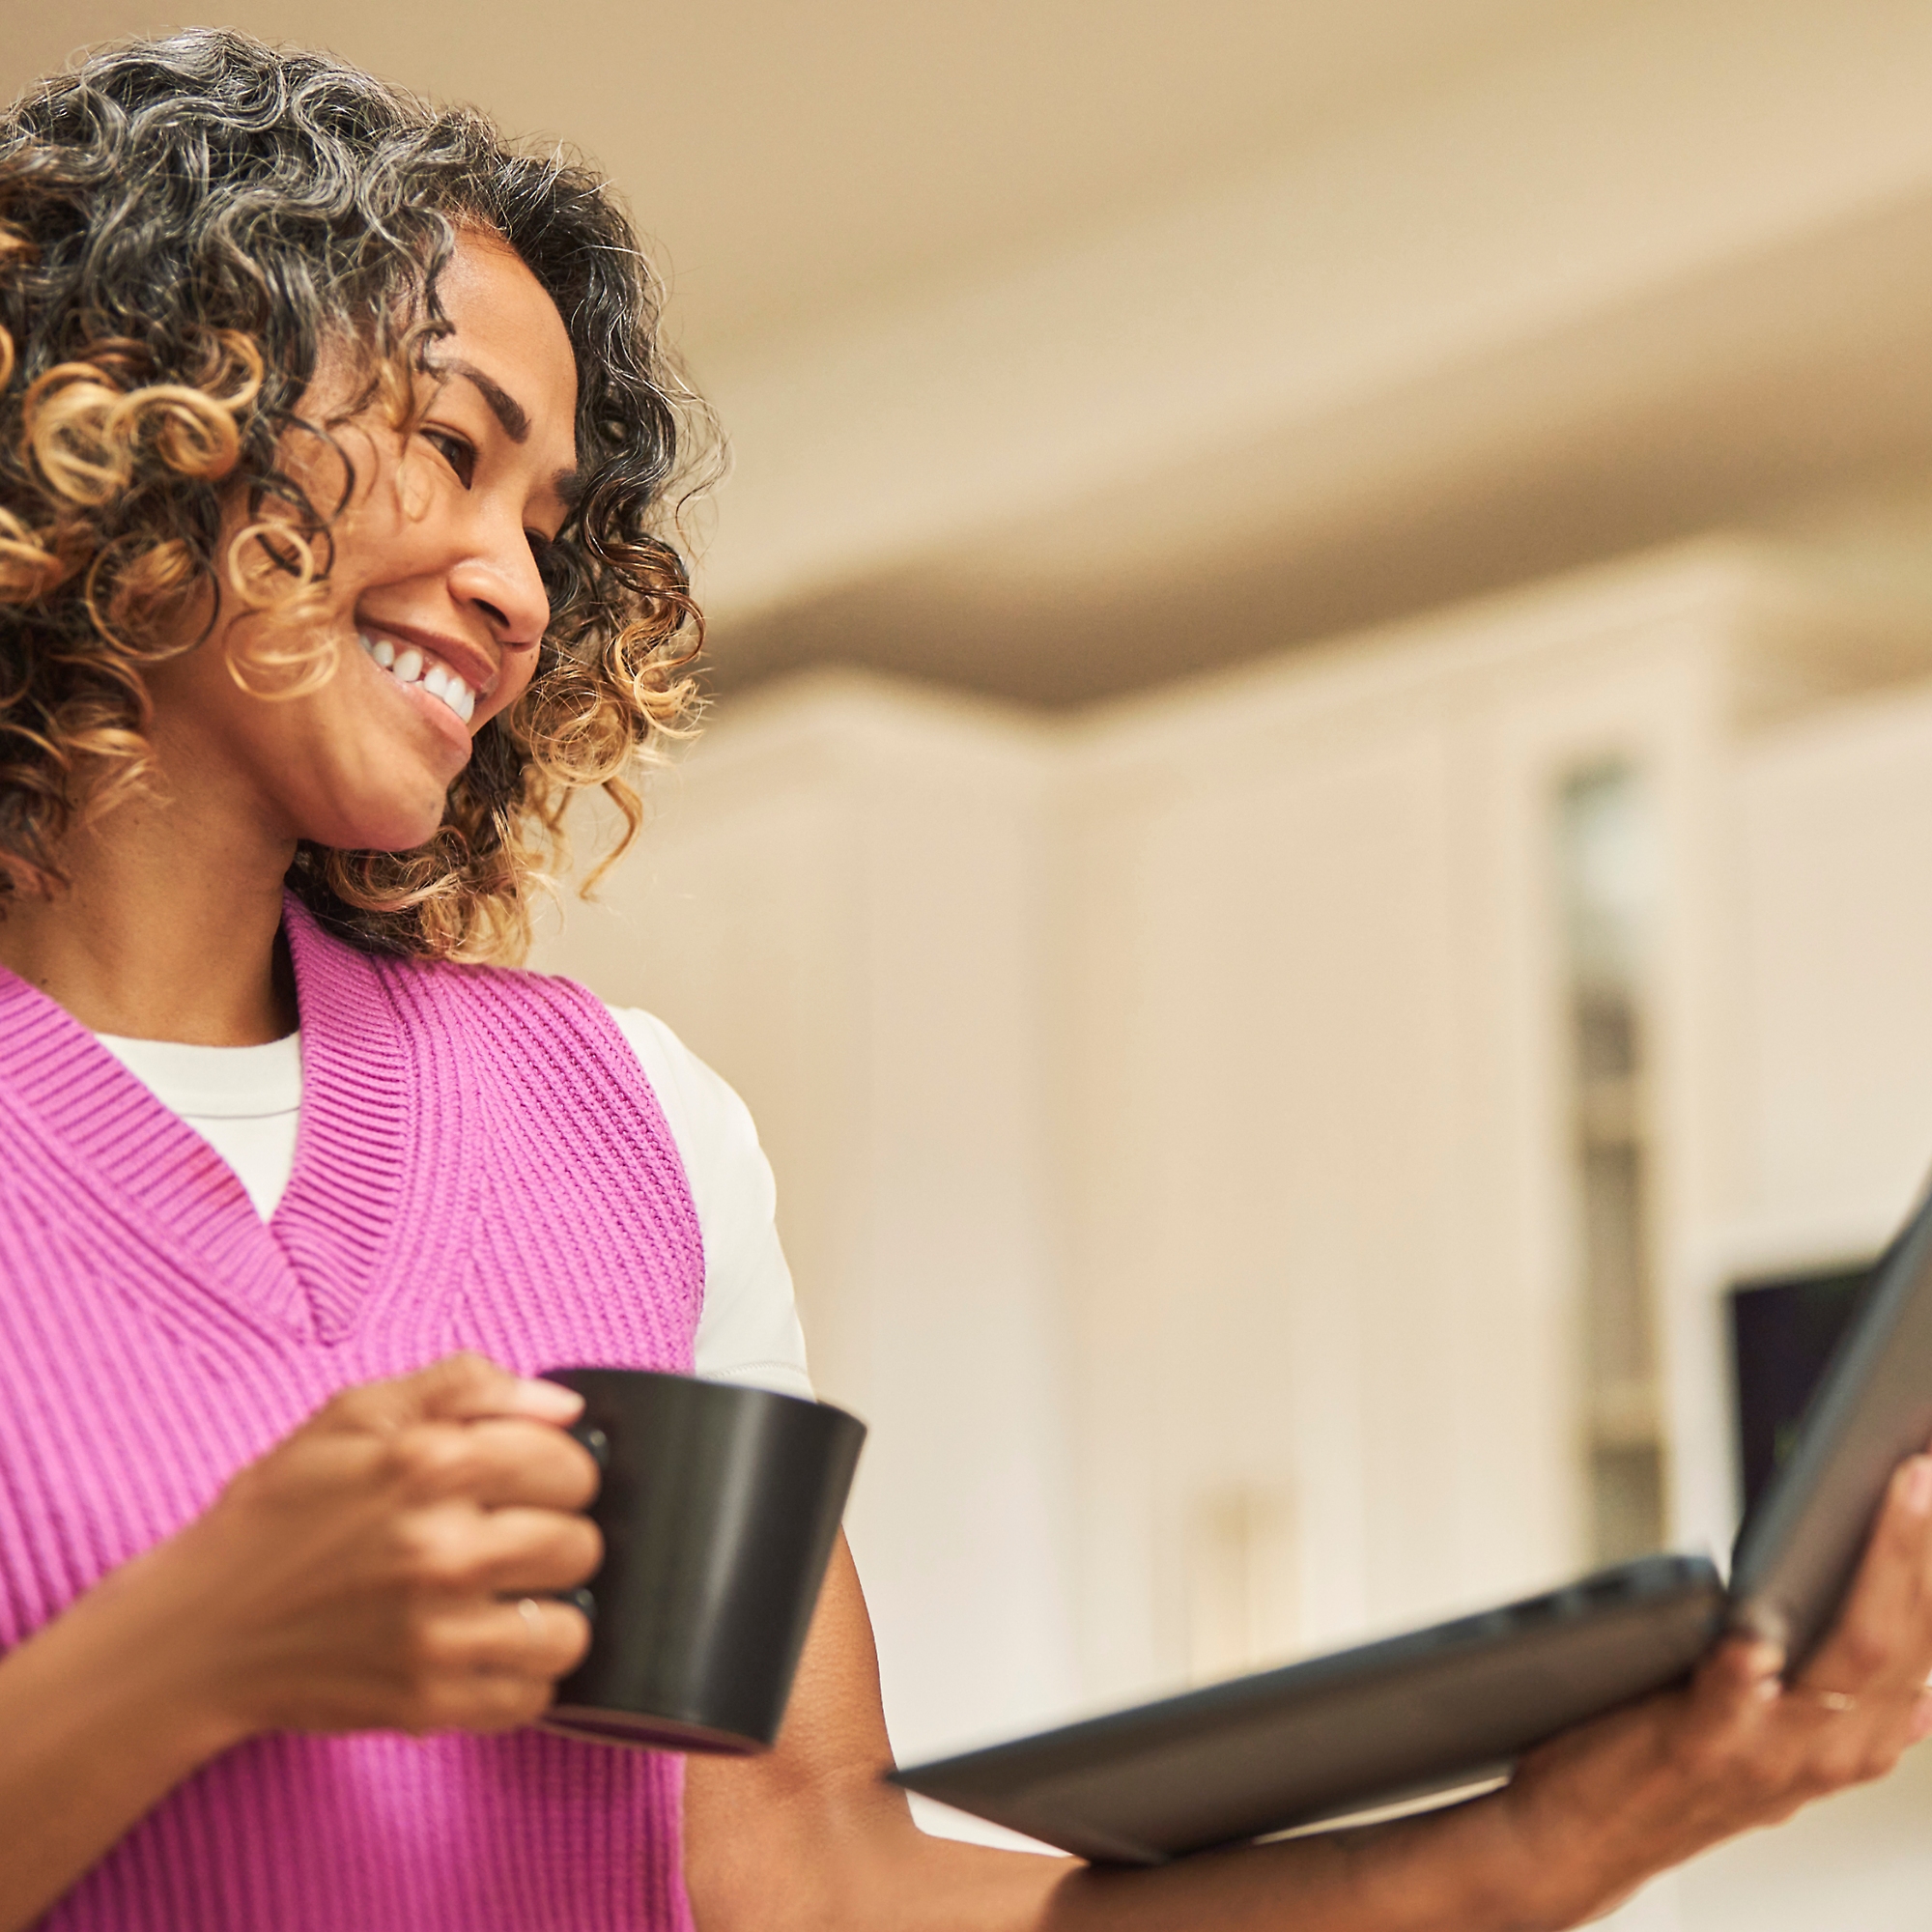 Una mujer sonriendo con una taza de café en una mano y un portátil en la otra